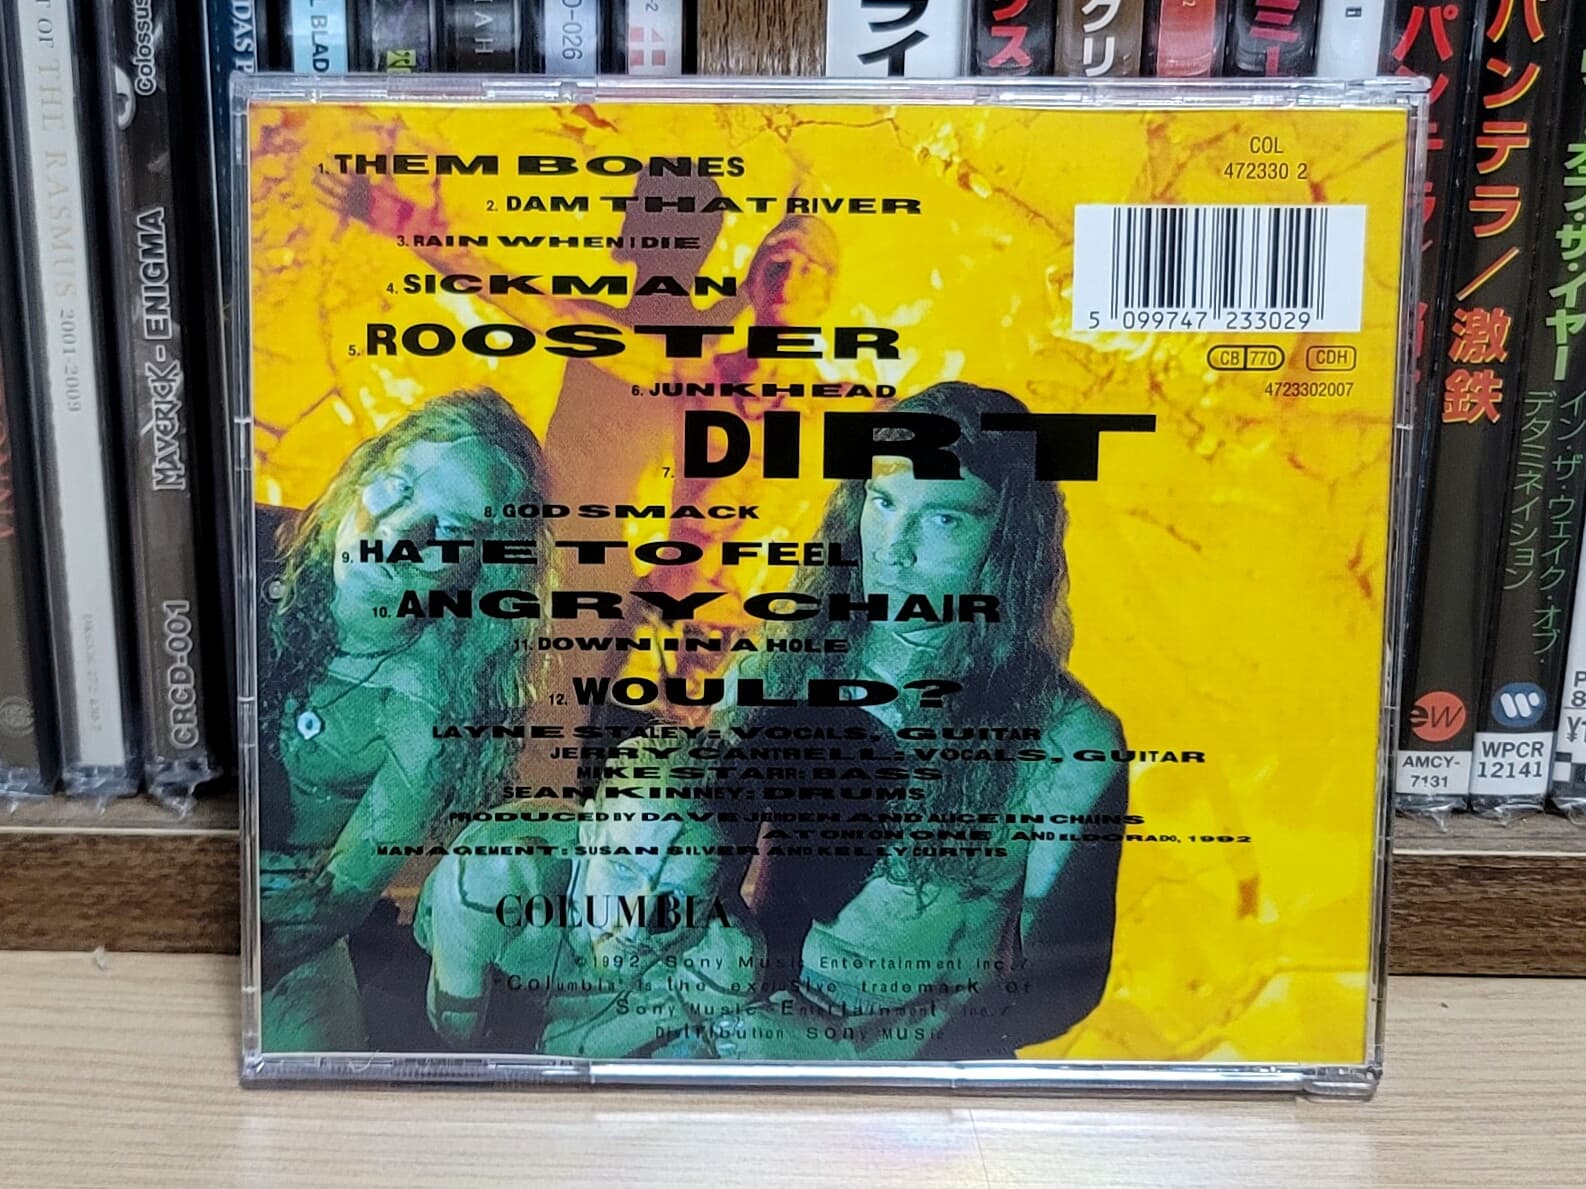 (수입) Alice In Chains - Dirt